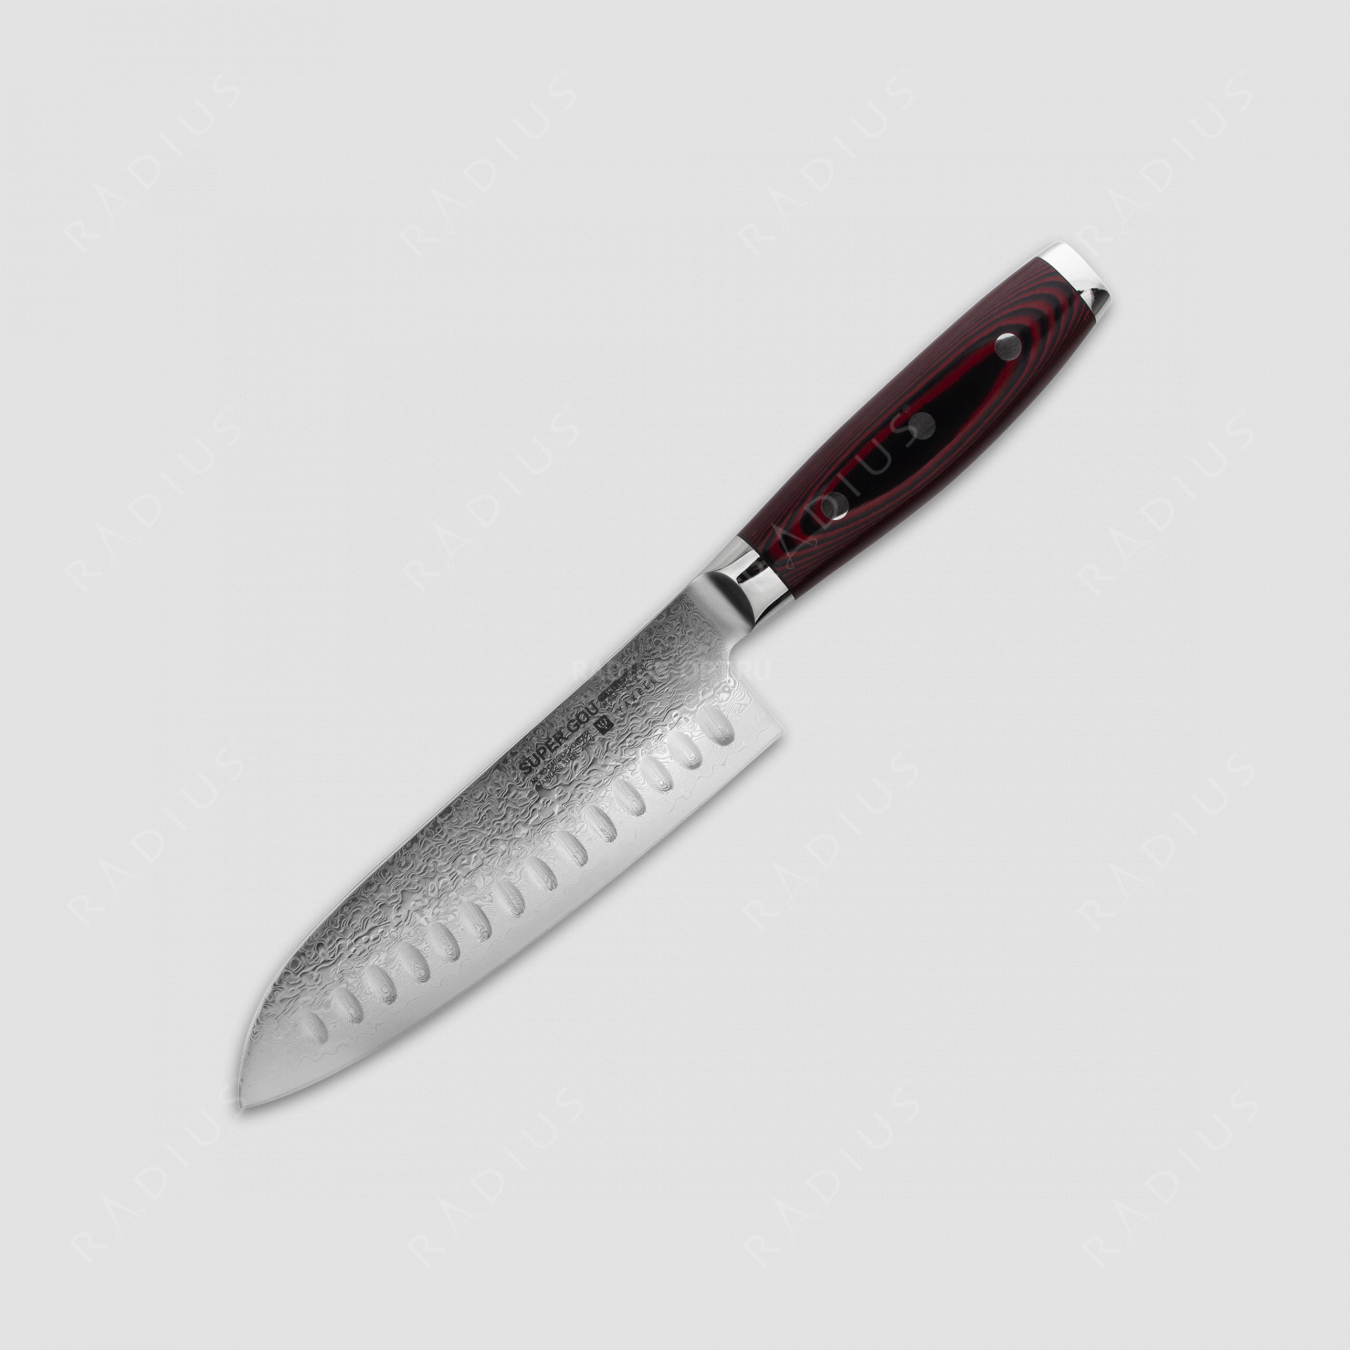 Нож кухонный Сантоку 16,5 см, с углублениями на лезвии, «Santoku», дамасская сталь, серия GOU 161, YAXELL, Япония